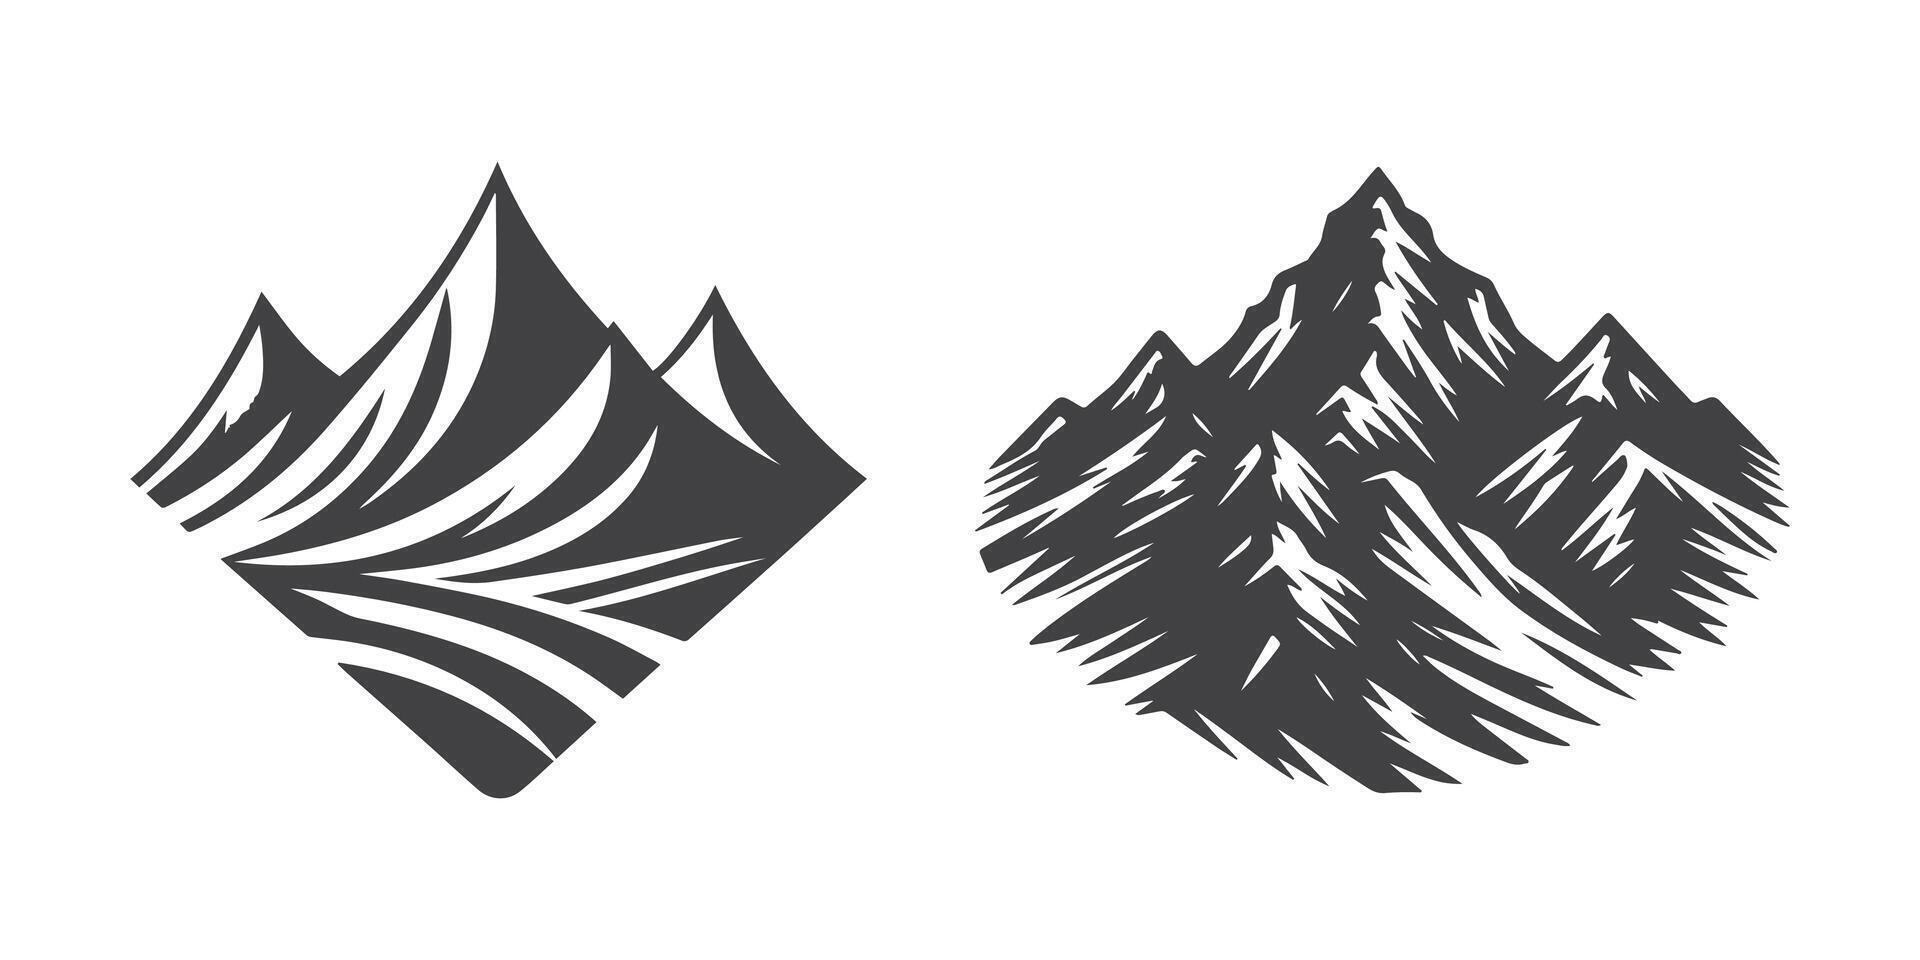 mountains Vector illustration. set of mountains logo, set of mountains silhouette